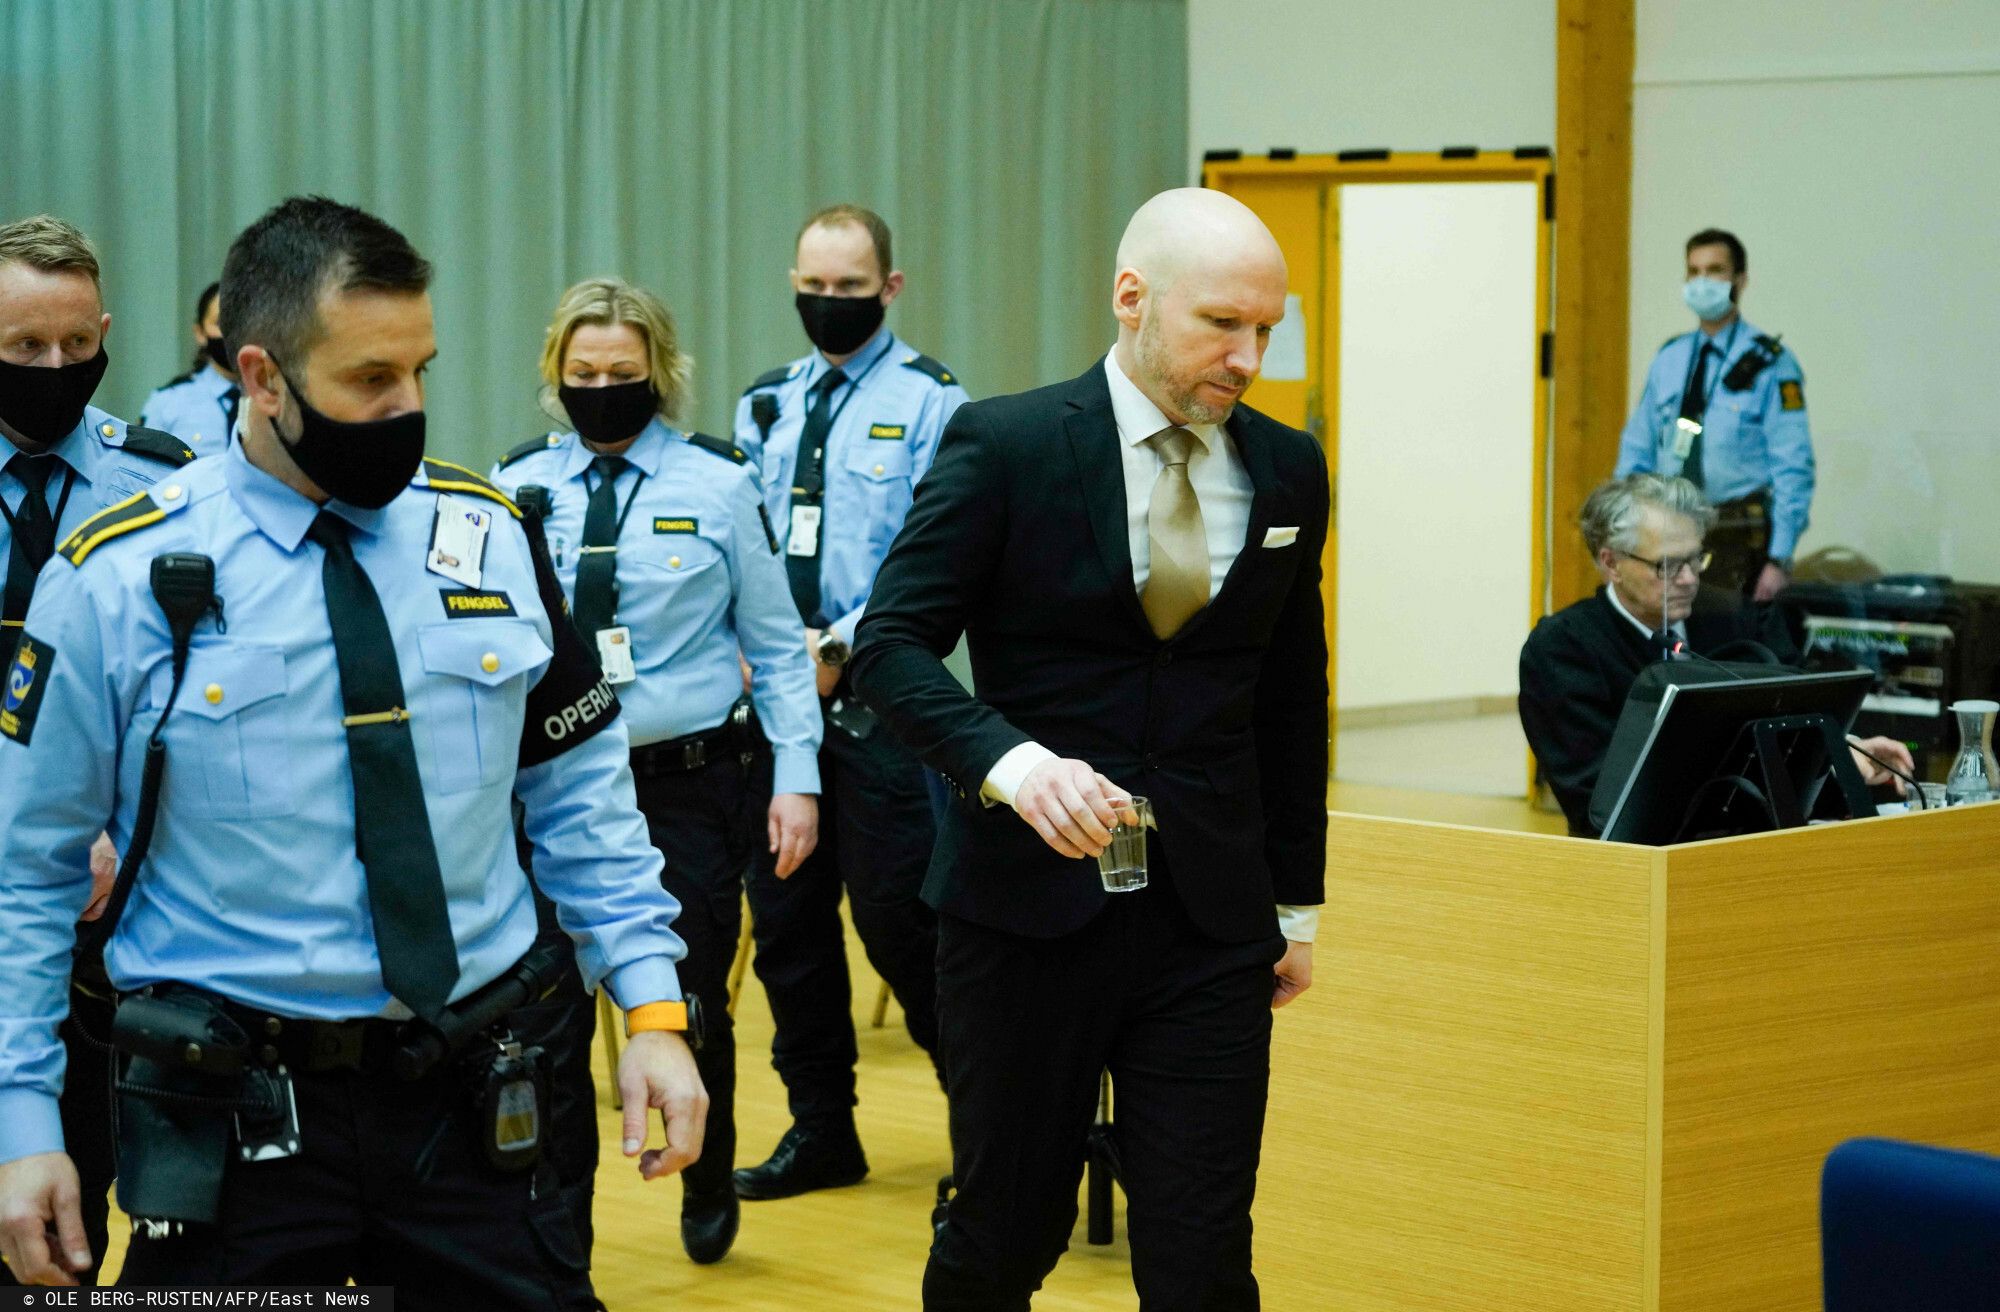 Breivik oskarżył Norwegię. "Za zimna kawa, brzydki wystrój celi" uznał za łamie praw człowieka. Zapadł wyrok